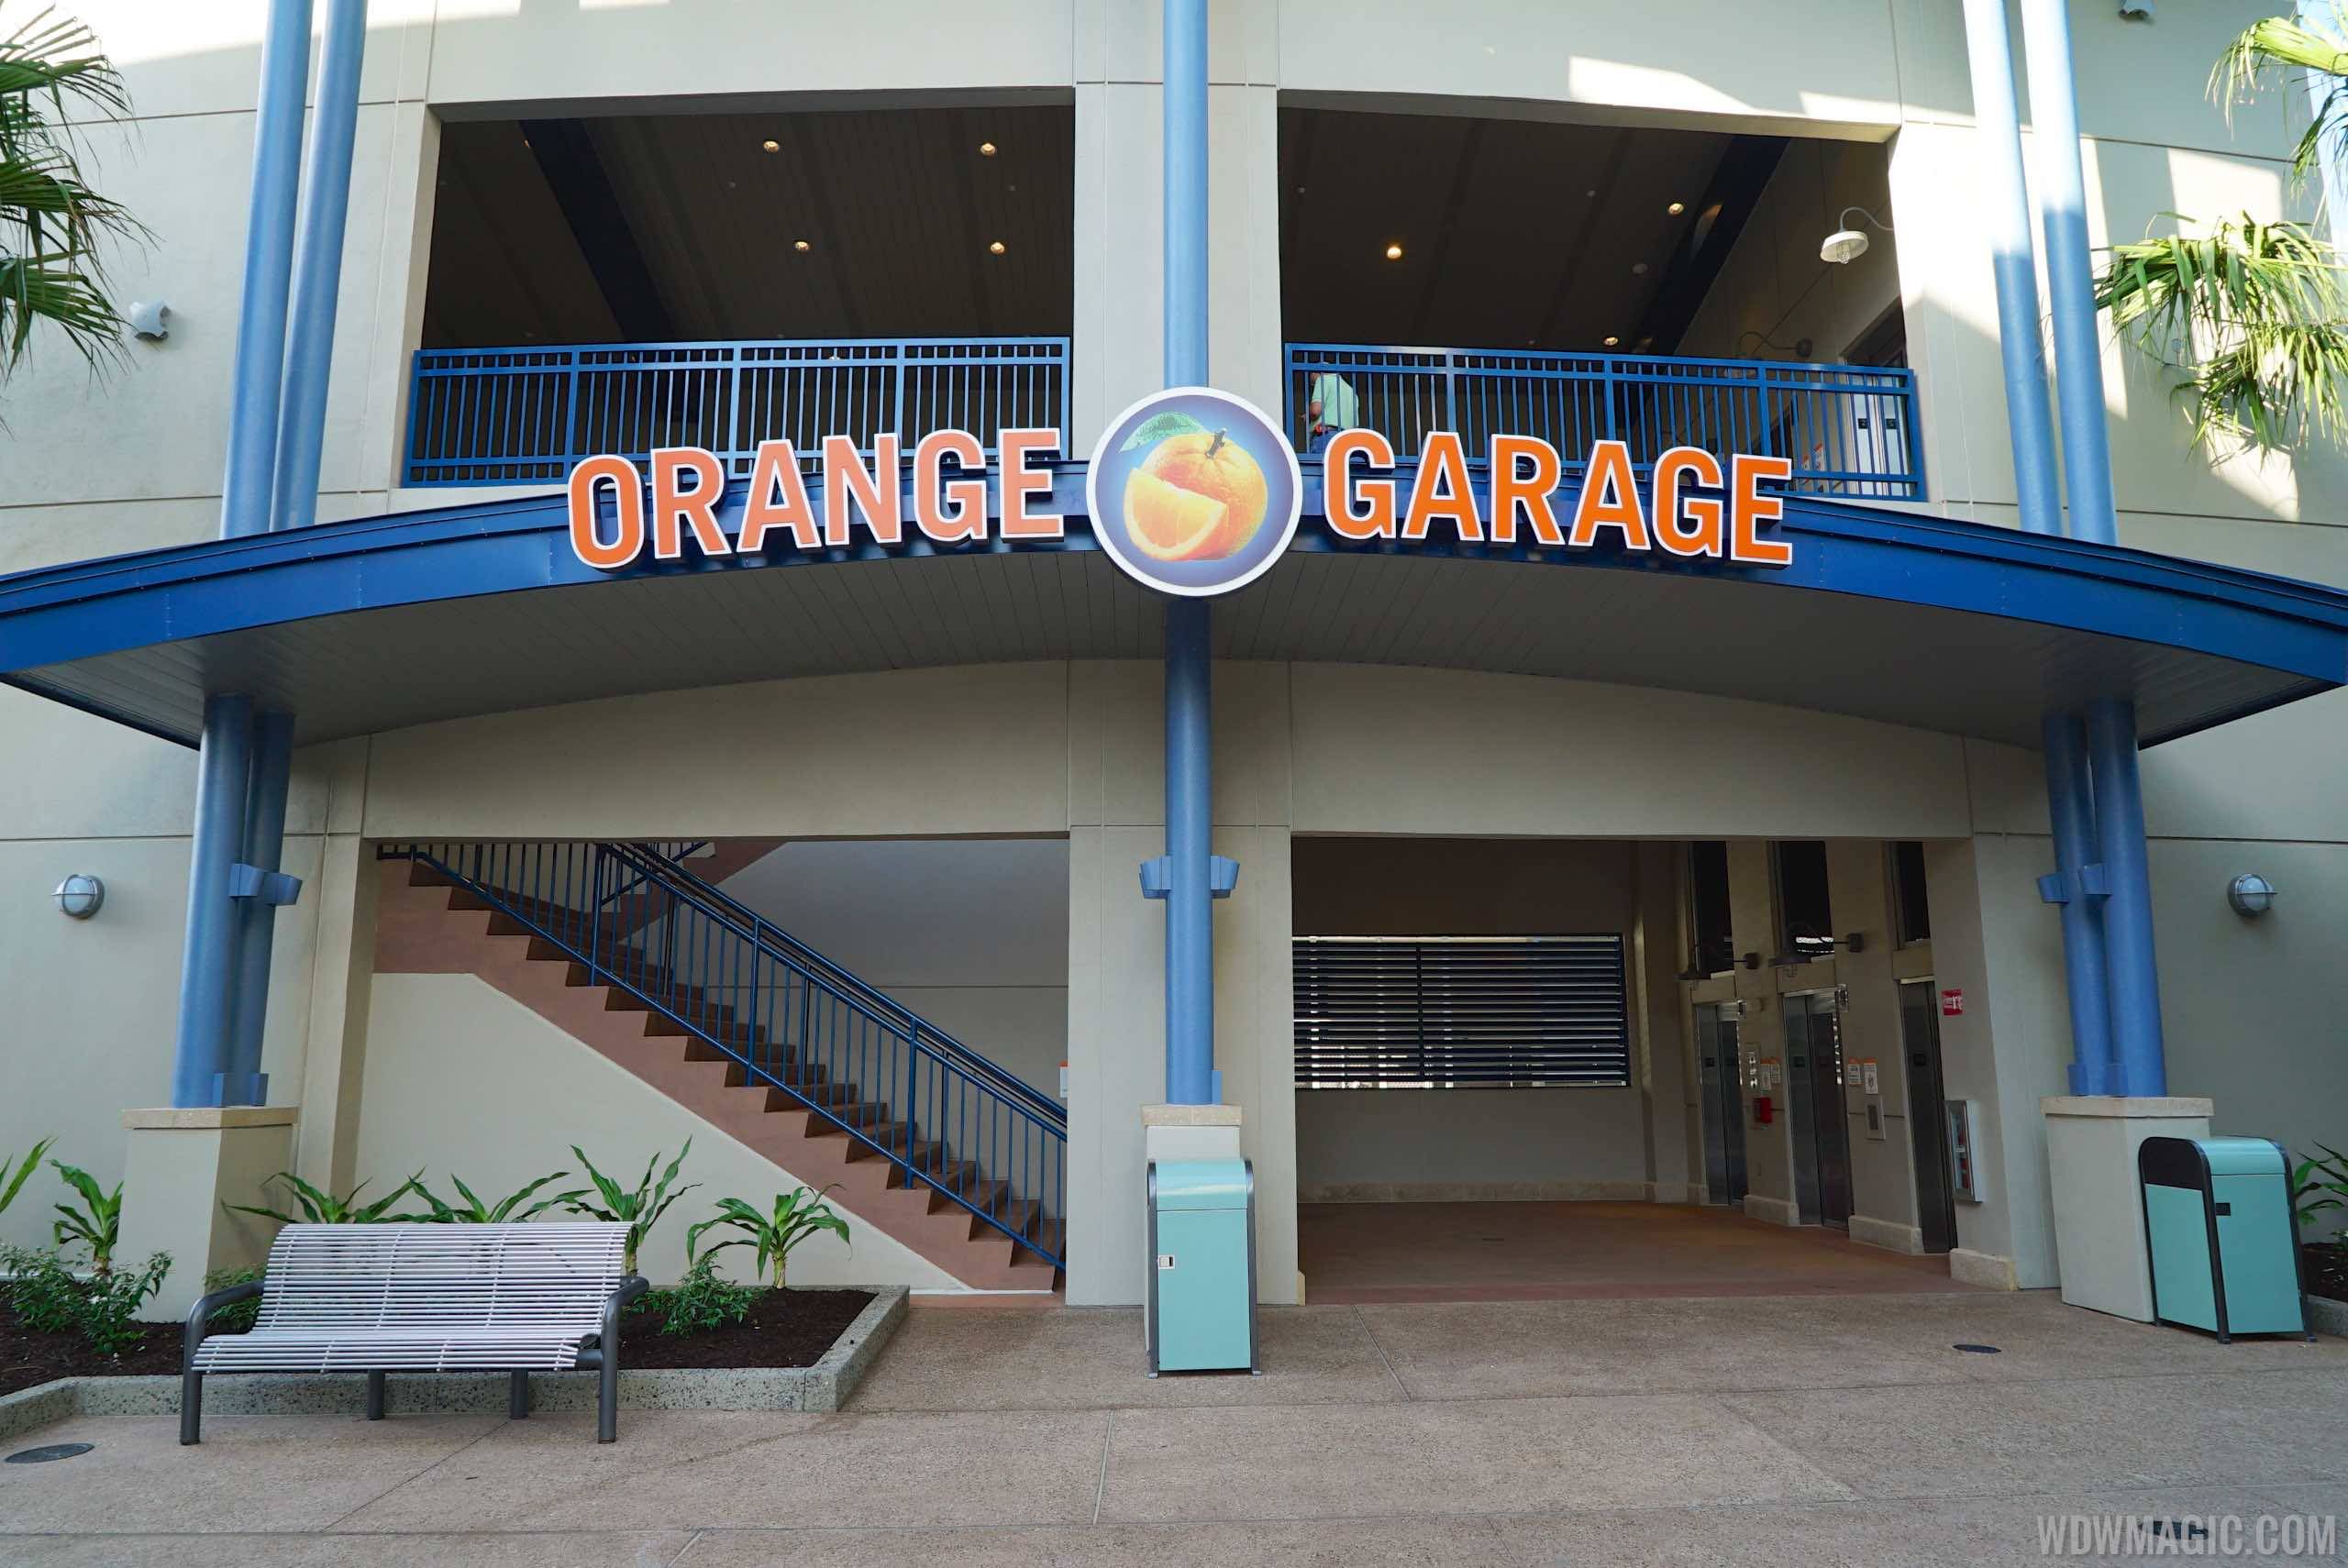 Disney Springs Orange Parking Garage east connector - Ground level entrance